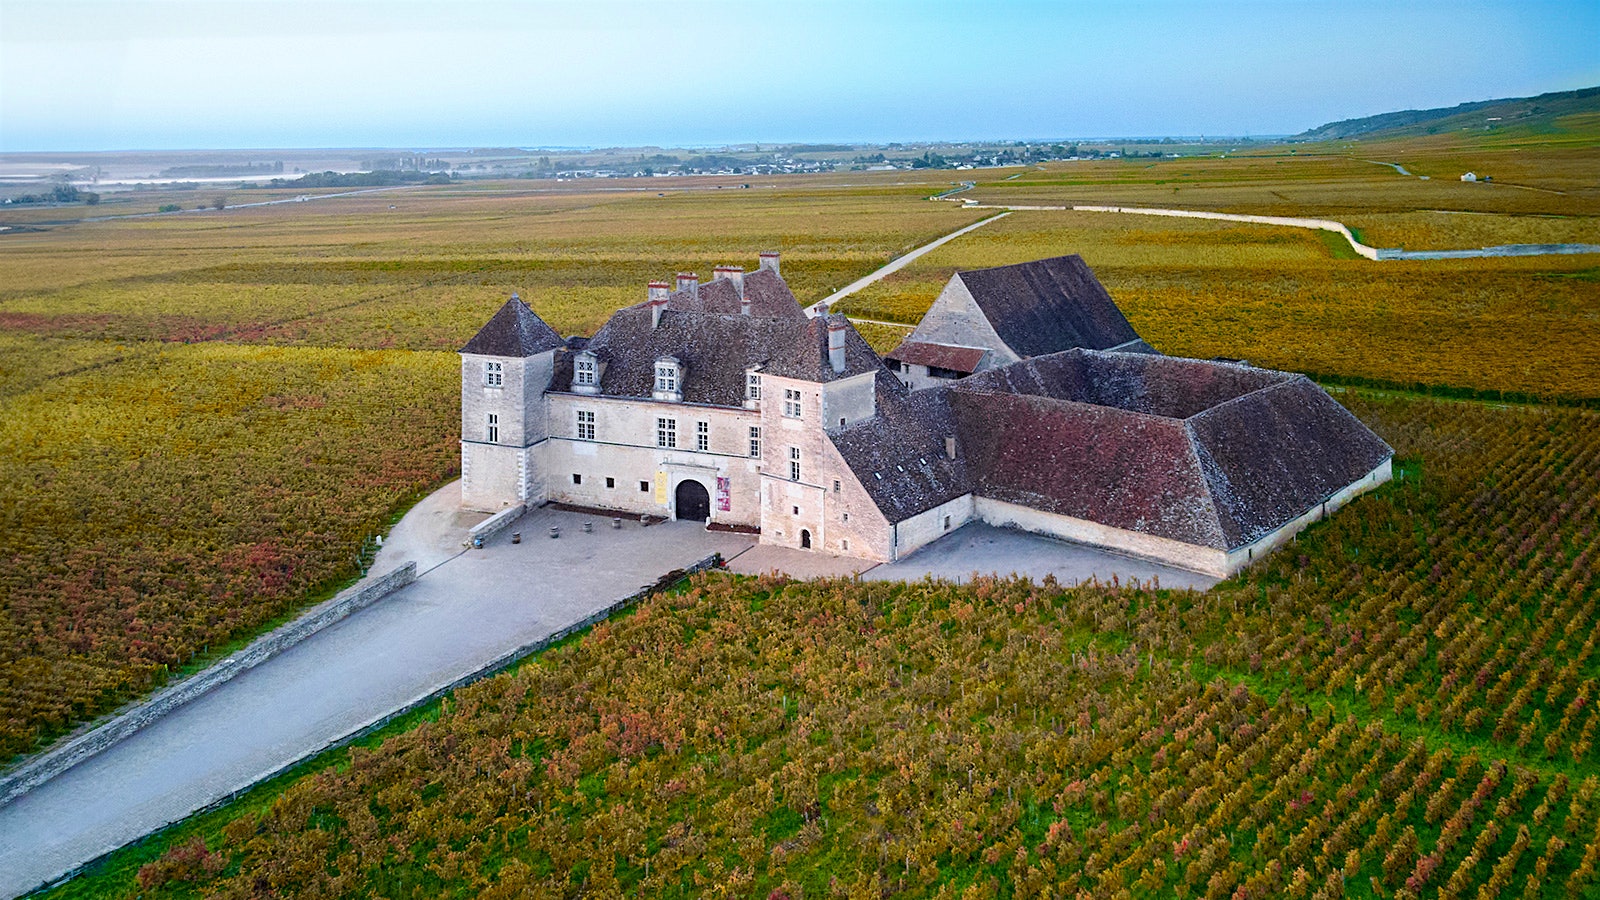  Château de Vougeot in Burgundy’s Côtes de Nuits.